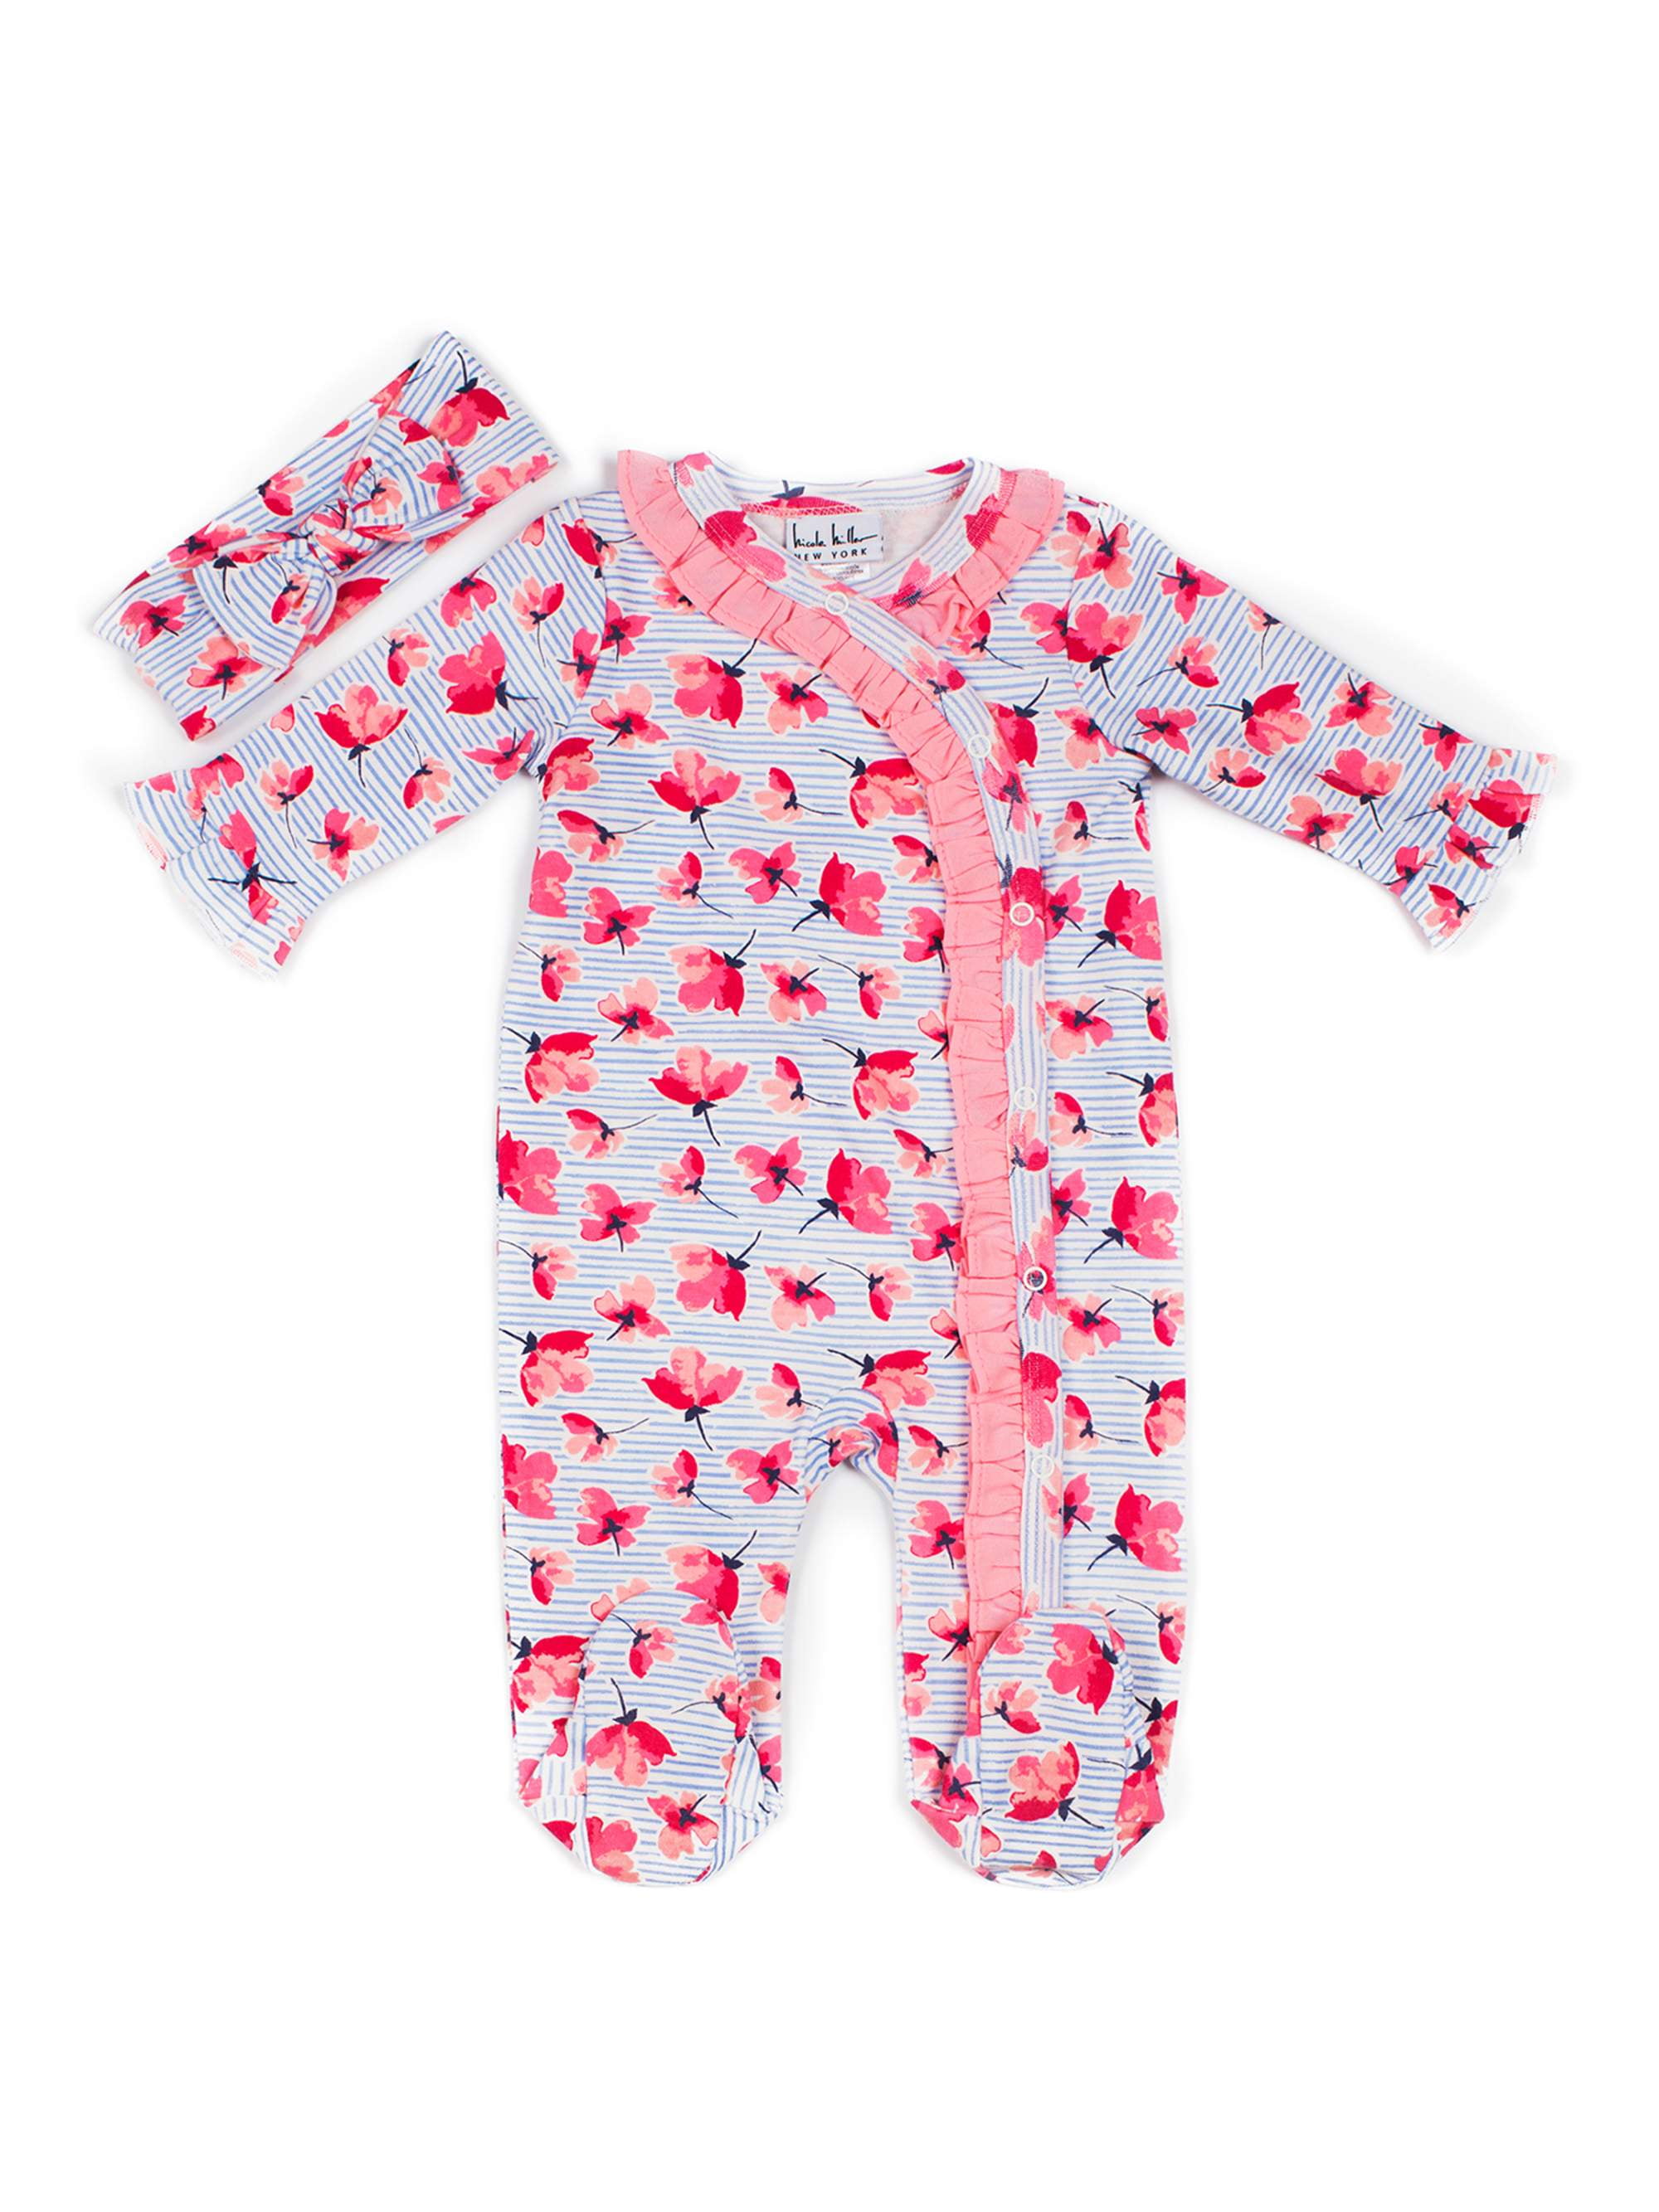 Bon Bini Nicole Miller 8-Pack Infant Girl Socks Set